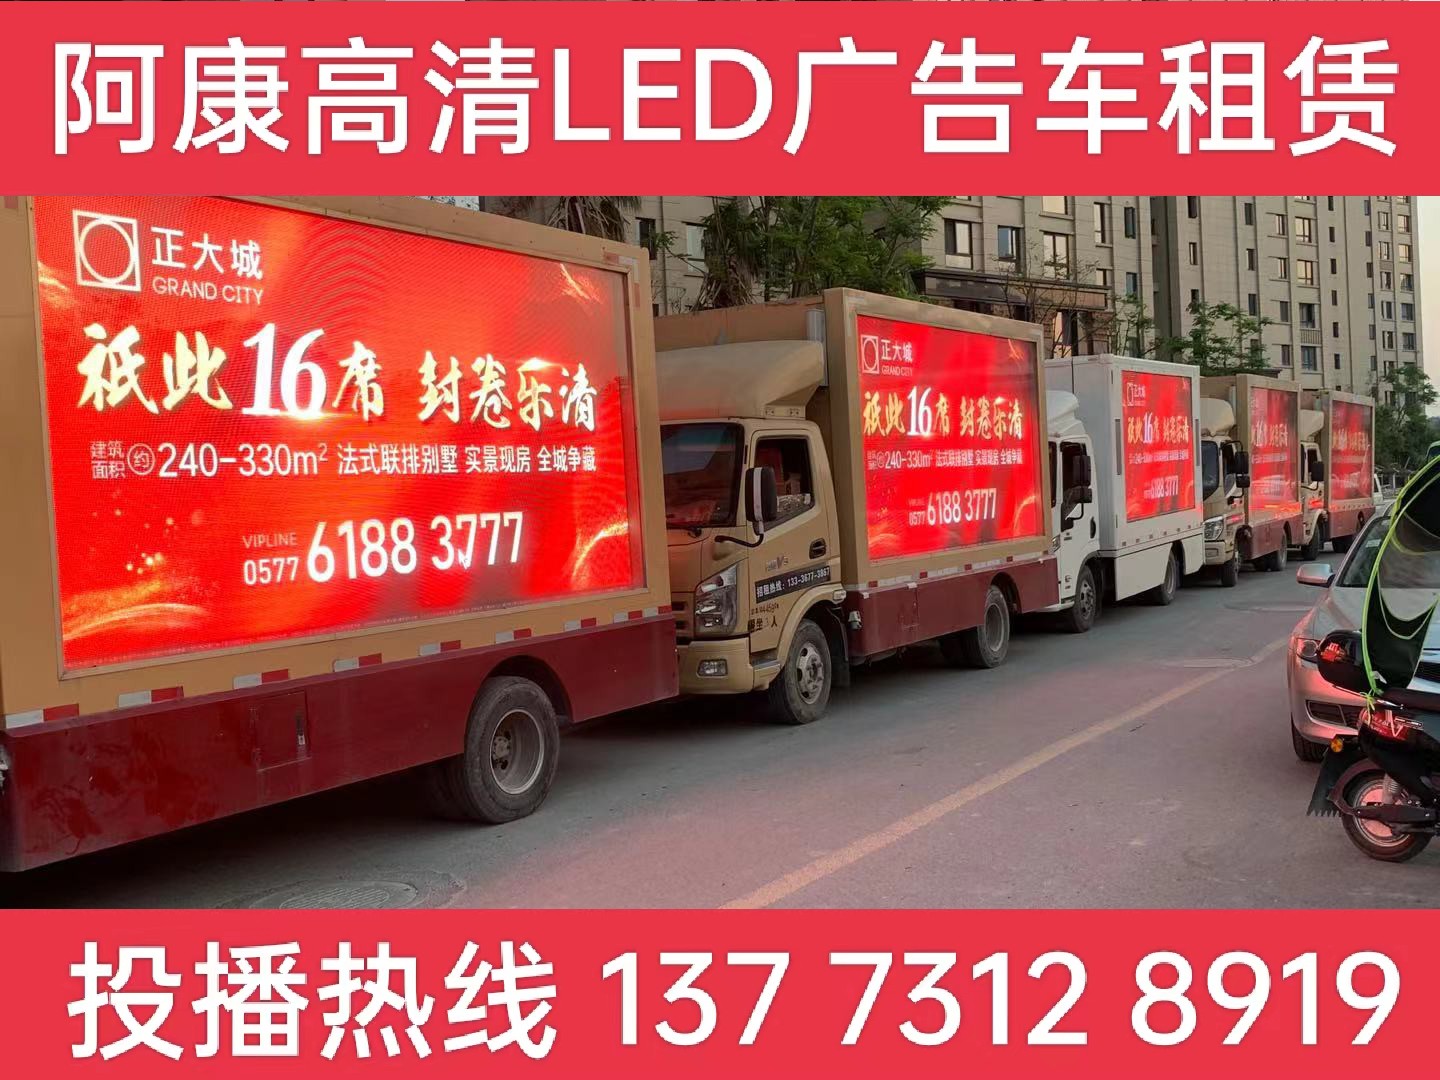 丹阳LED广告车出租